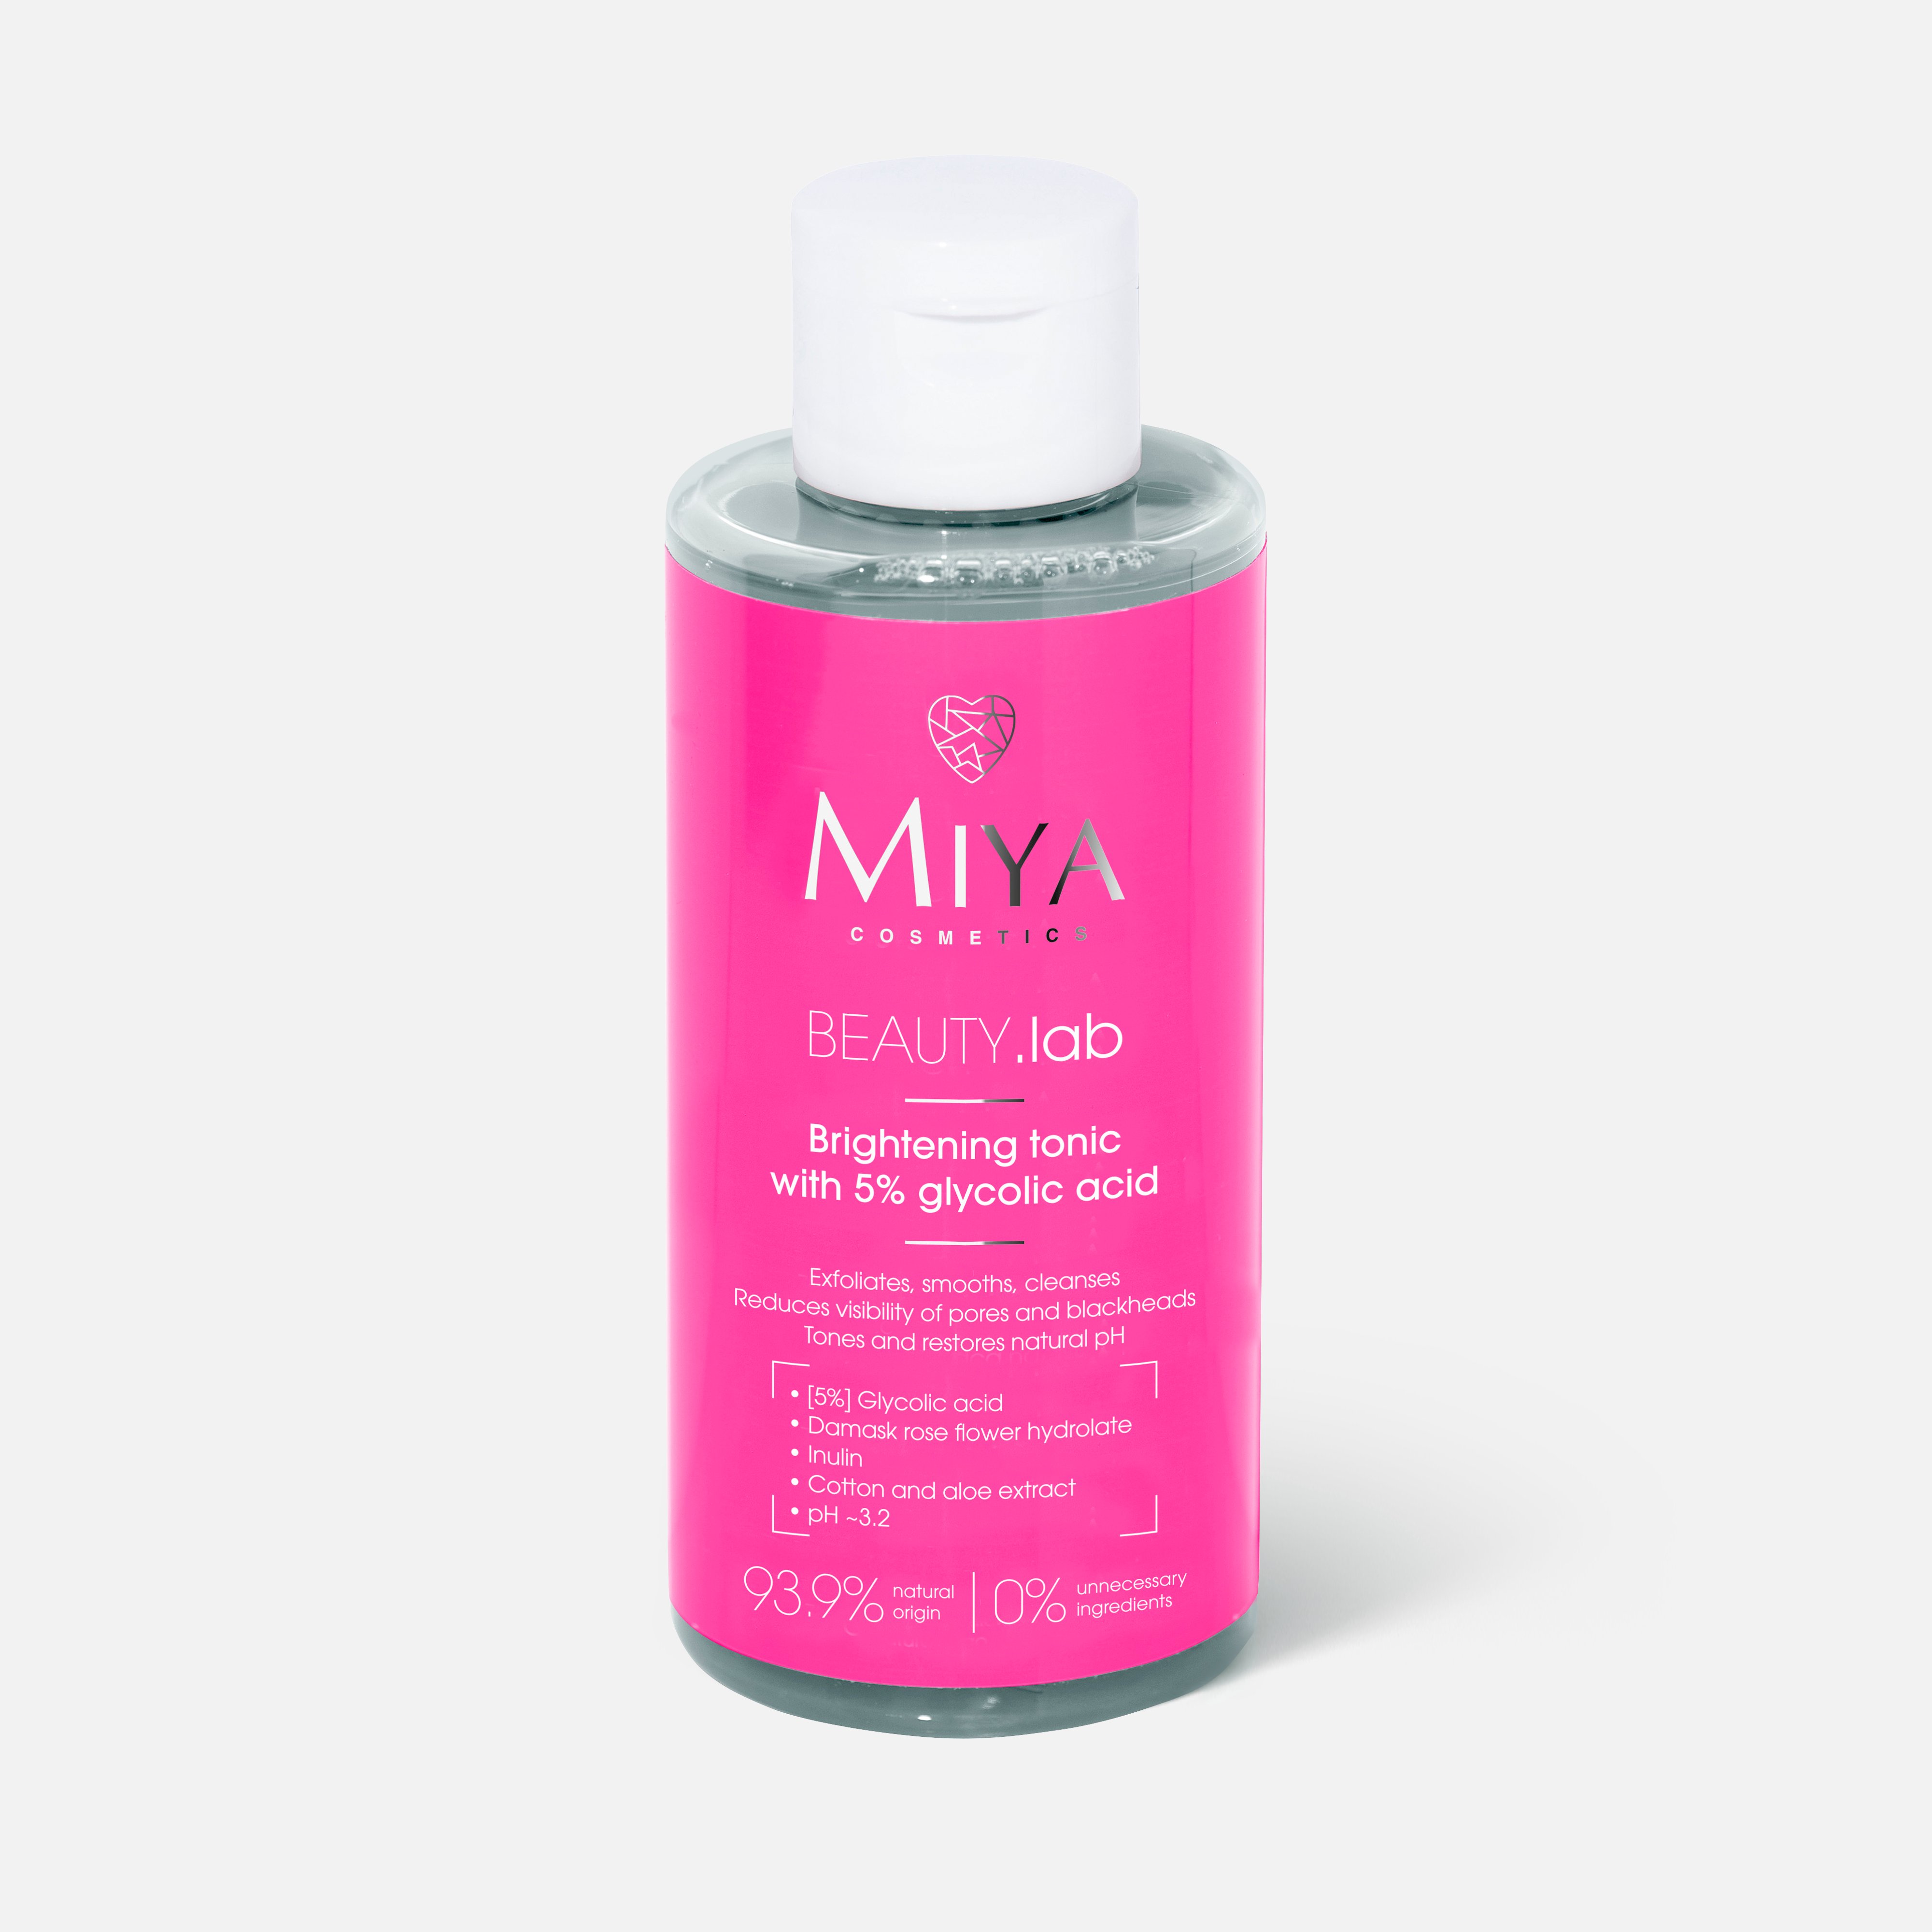 Тоник для лица Miya cosmetics Beauty.Lab Brightening, Glycolic acid 5%, 150 мл крем для лица каждый день с экстрактом календулы 50 мл